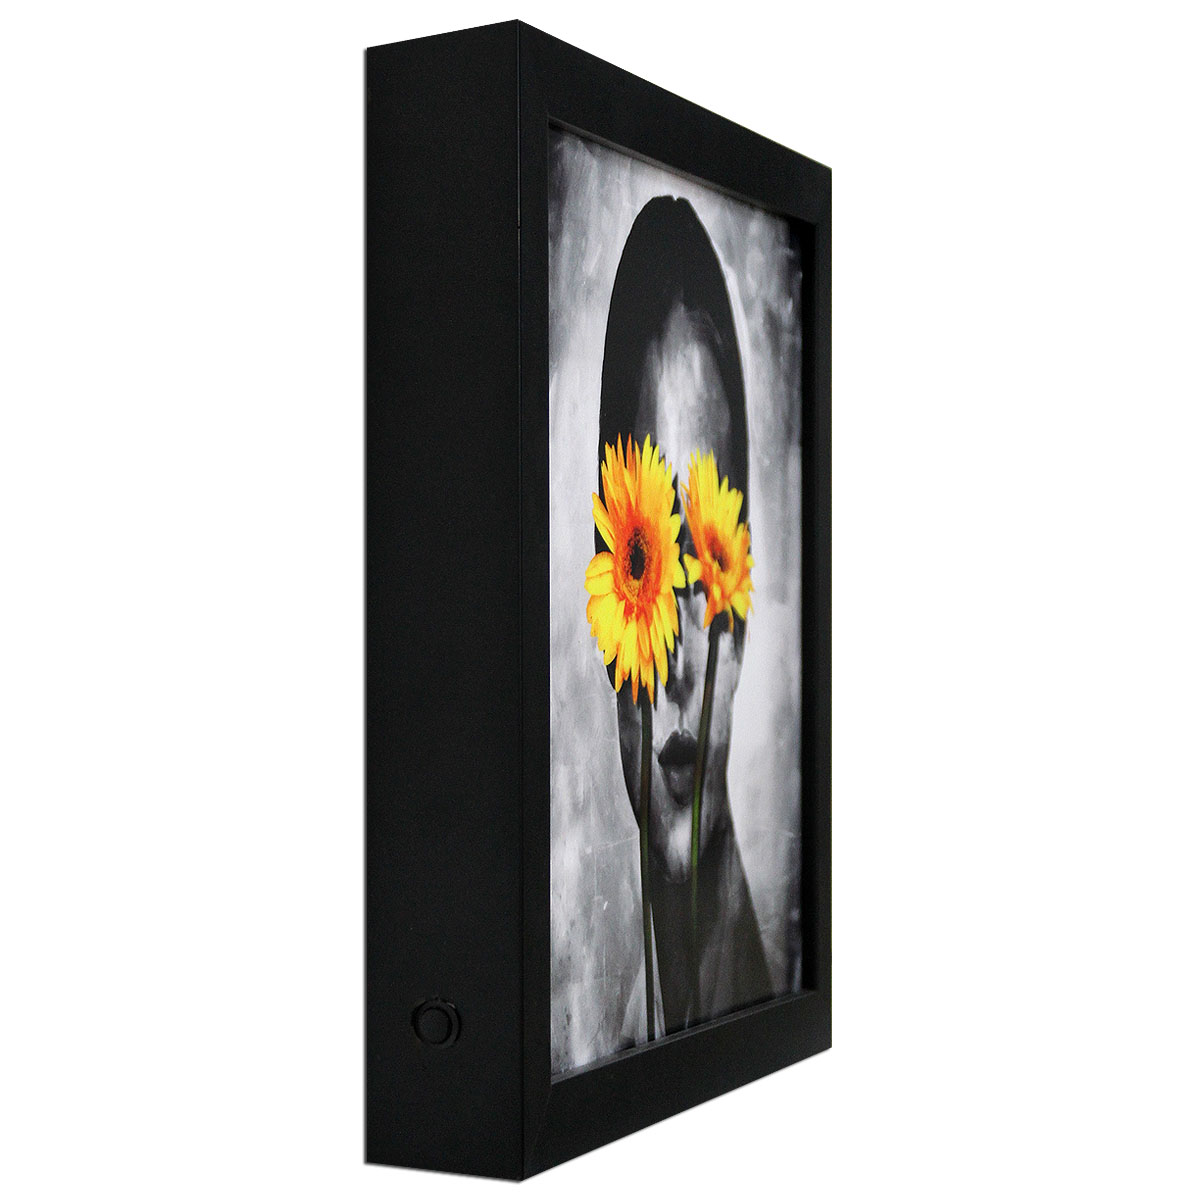 D. Landô: "Secret Garden #36", Unikat-Edition, digitale Kunst auf Lichtbox (A)